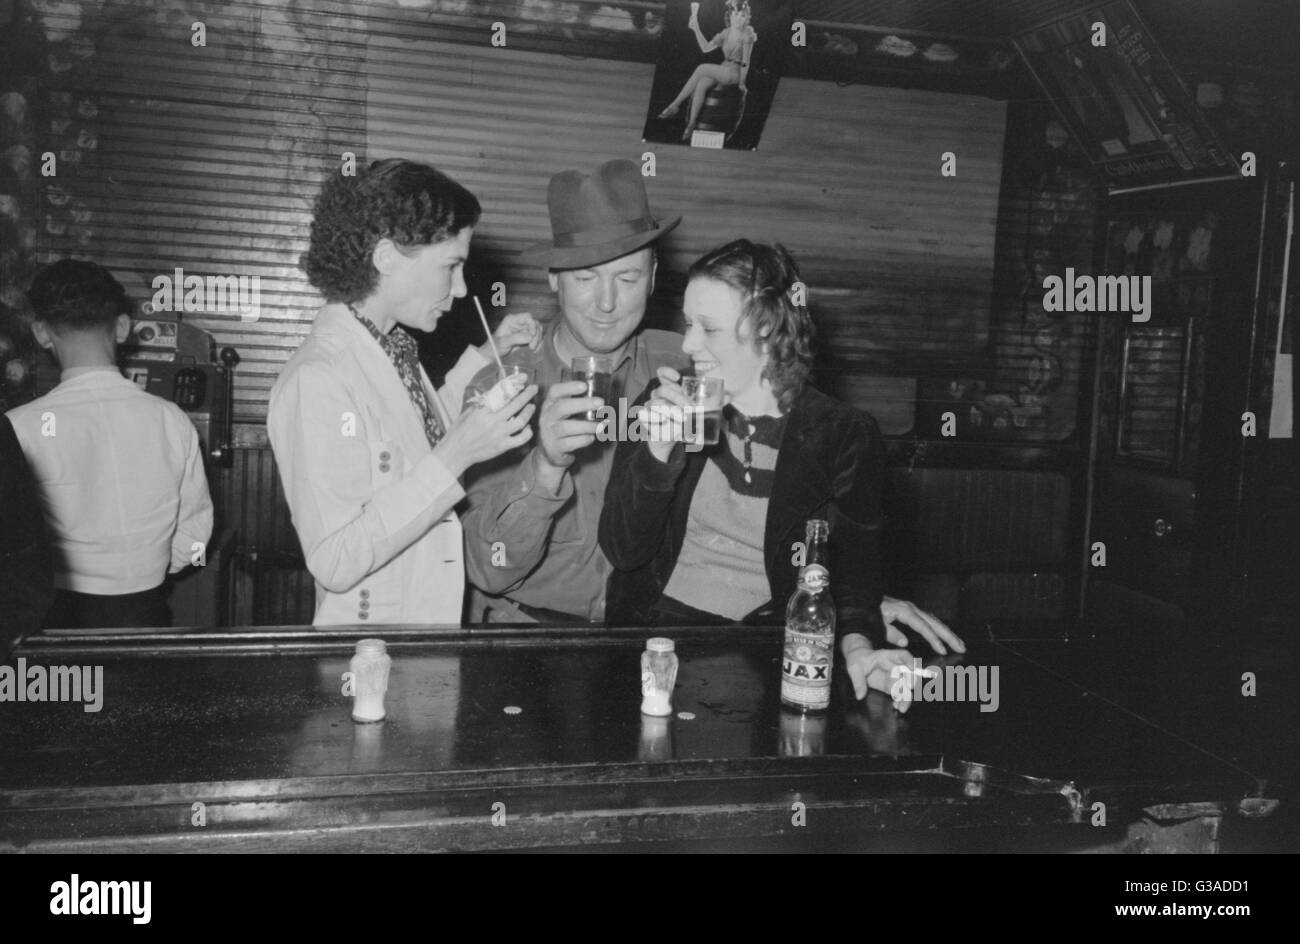 Drinking at the bar, saloon, Raceland, Louisiana Stock Photo